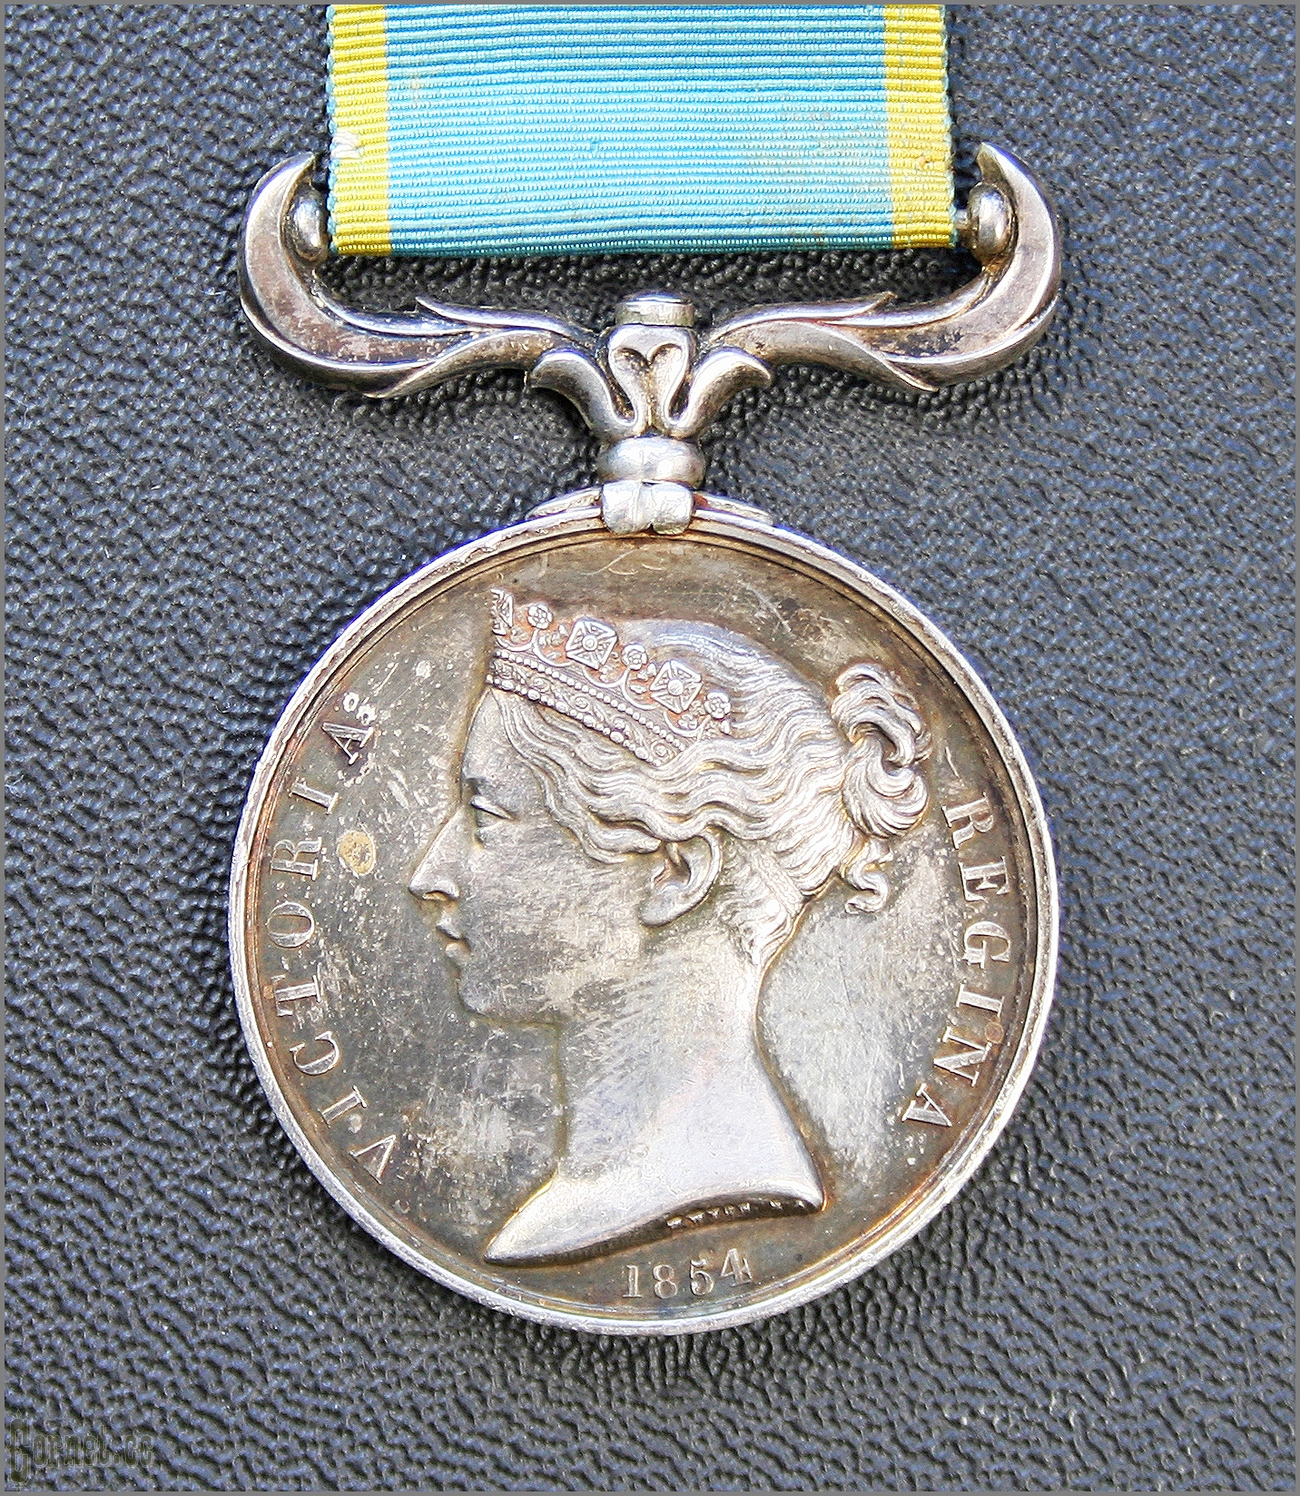 East war Medal (Crimean) 1856